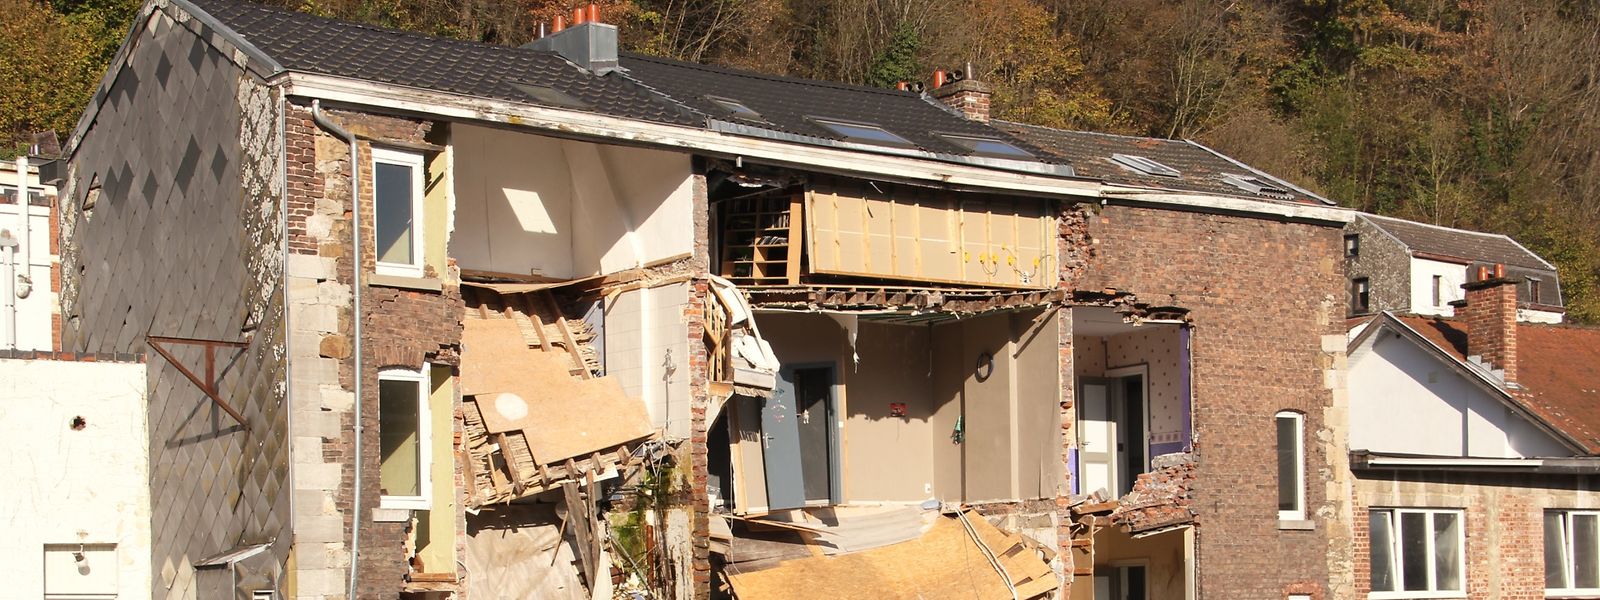 Au total, 59 maisons endommagées sur la commune de Pepinster ne pourront pas être reconstruites. 